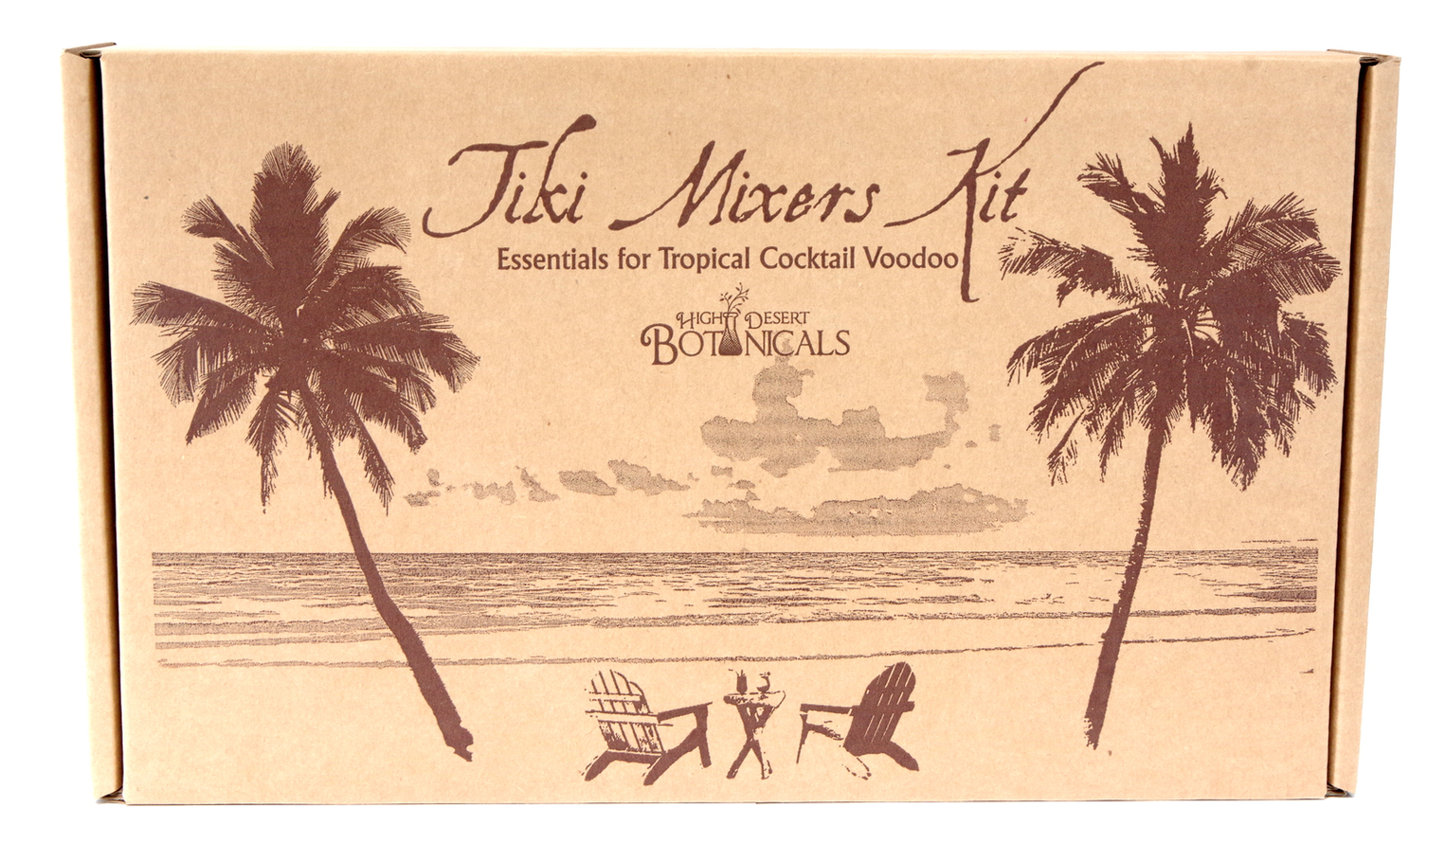 Tiki Mixers Kit